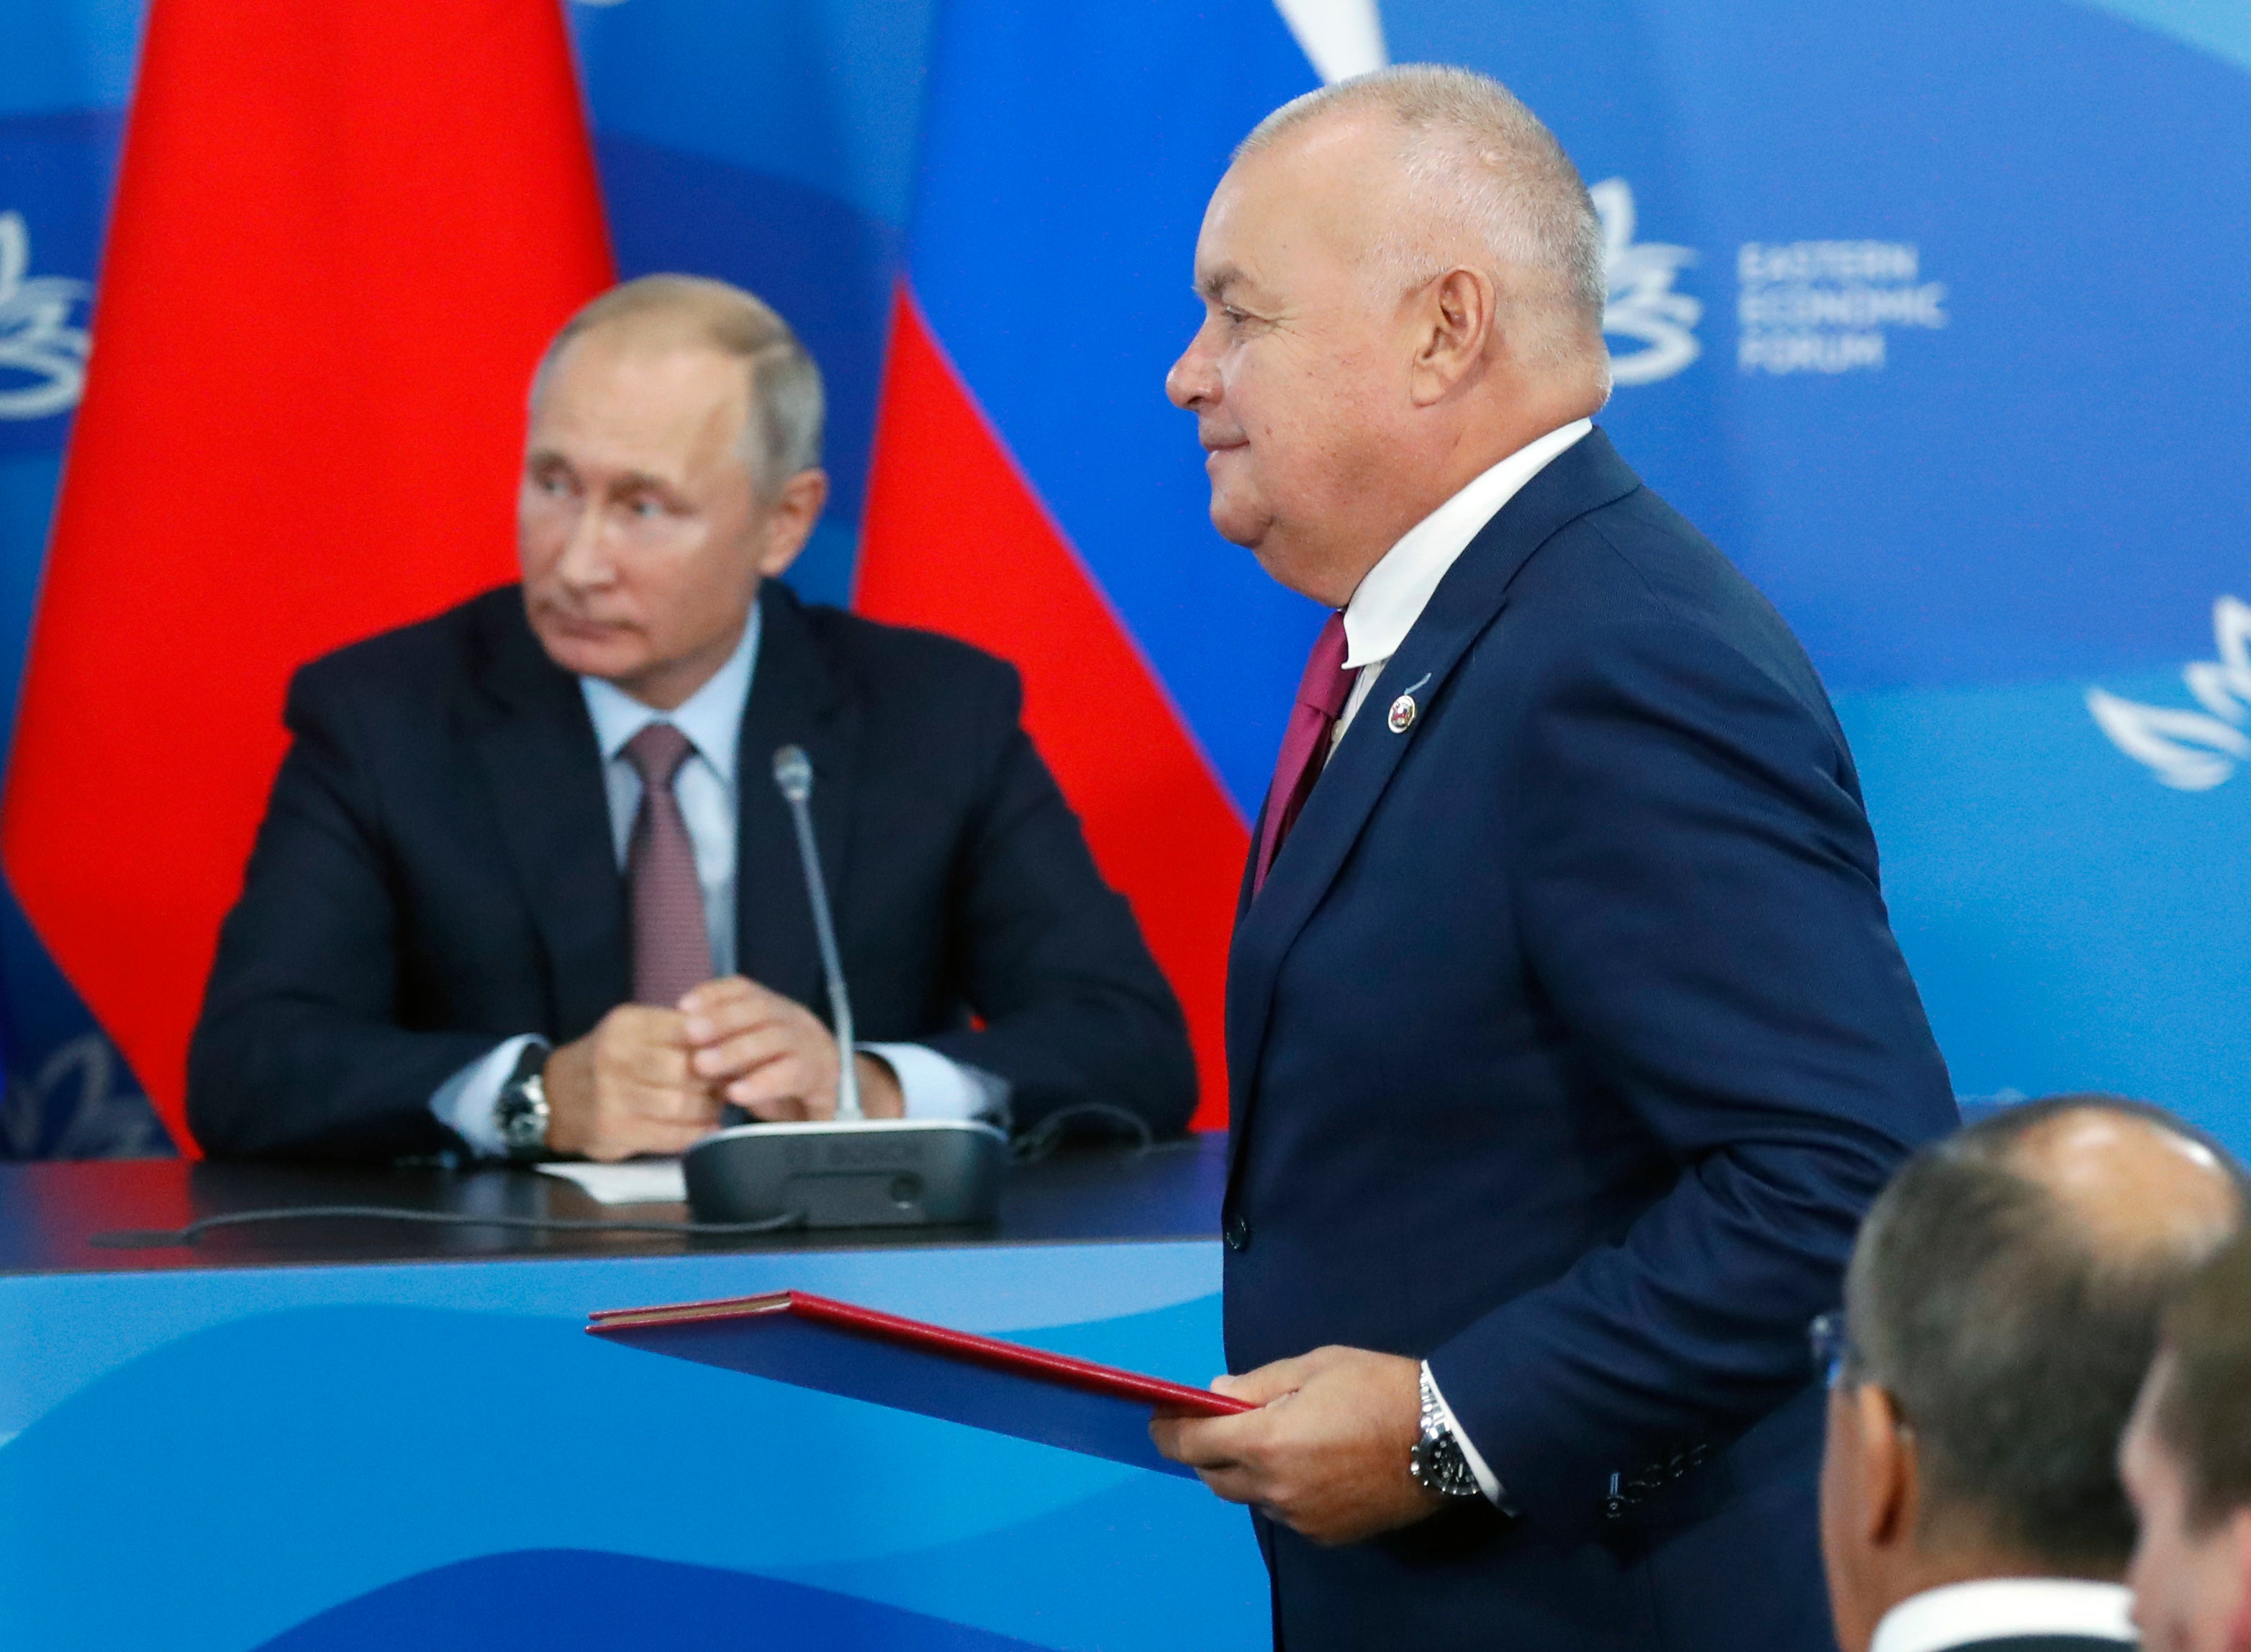 Head of Russia's state news agency Rossiya Segodnya, Dmitry Kiselyov, and President Vladimir Putin